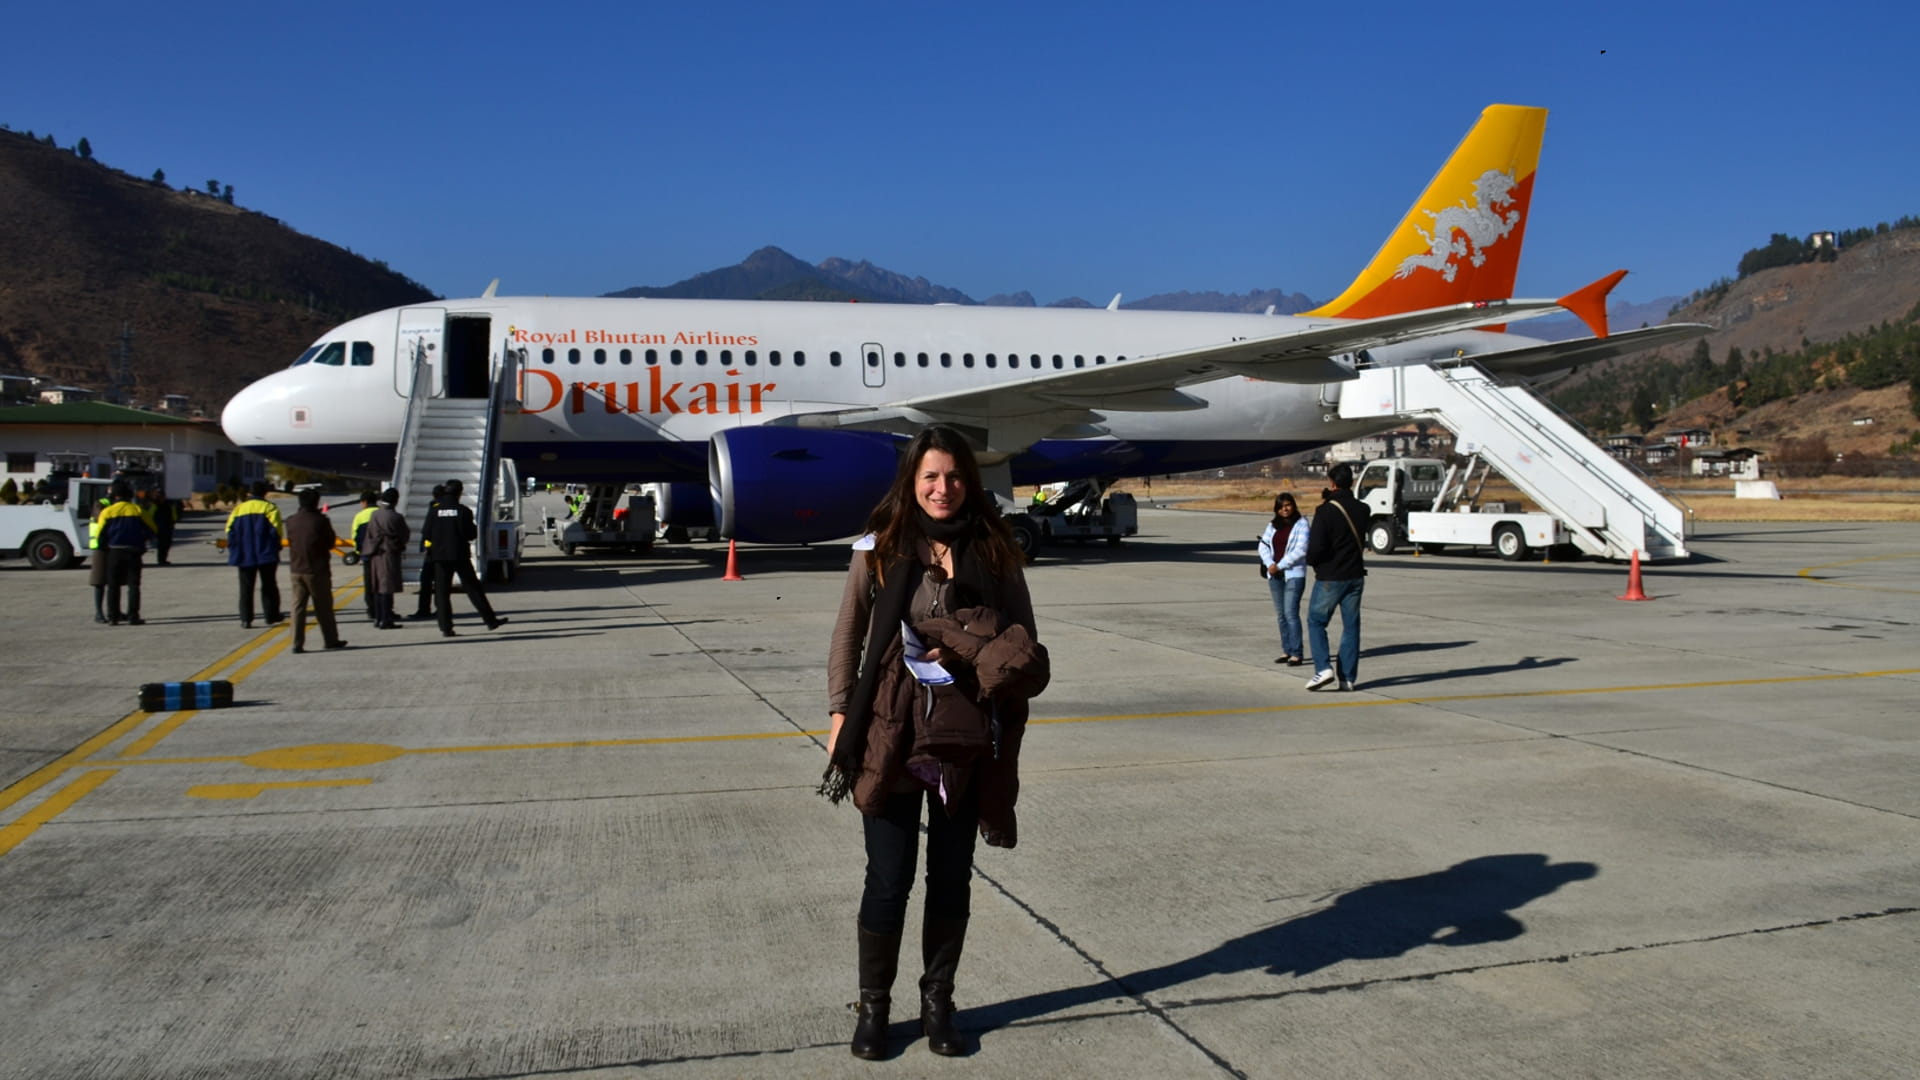 Druk Air Royal Bhutan Airlines 